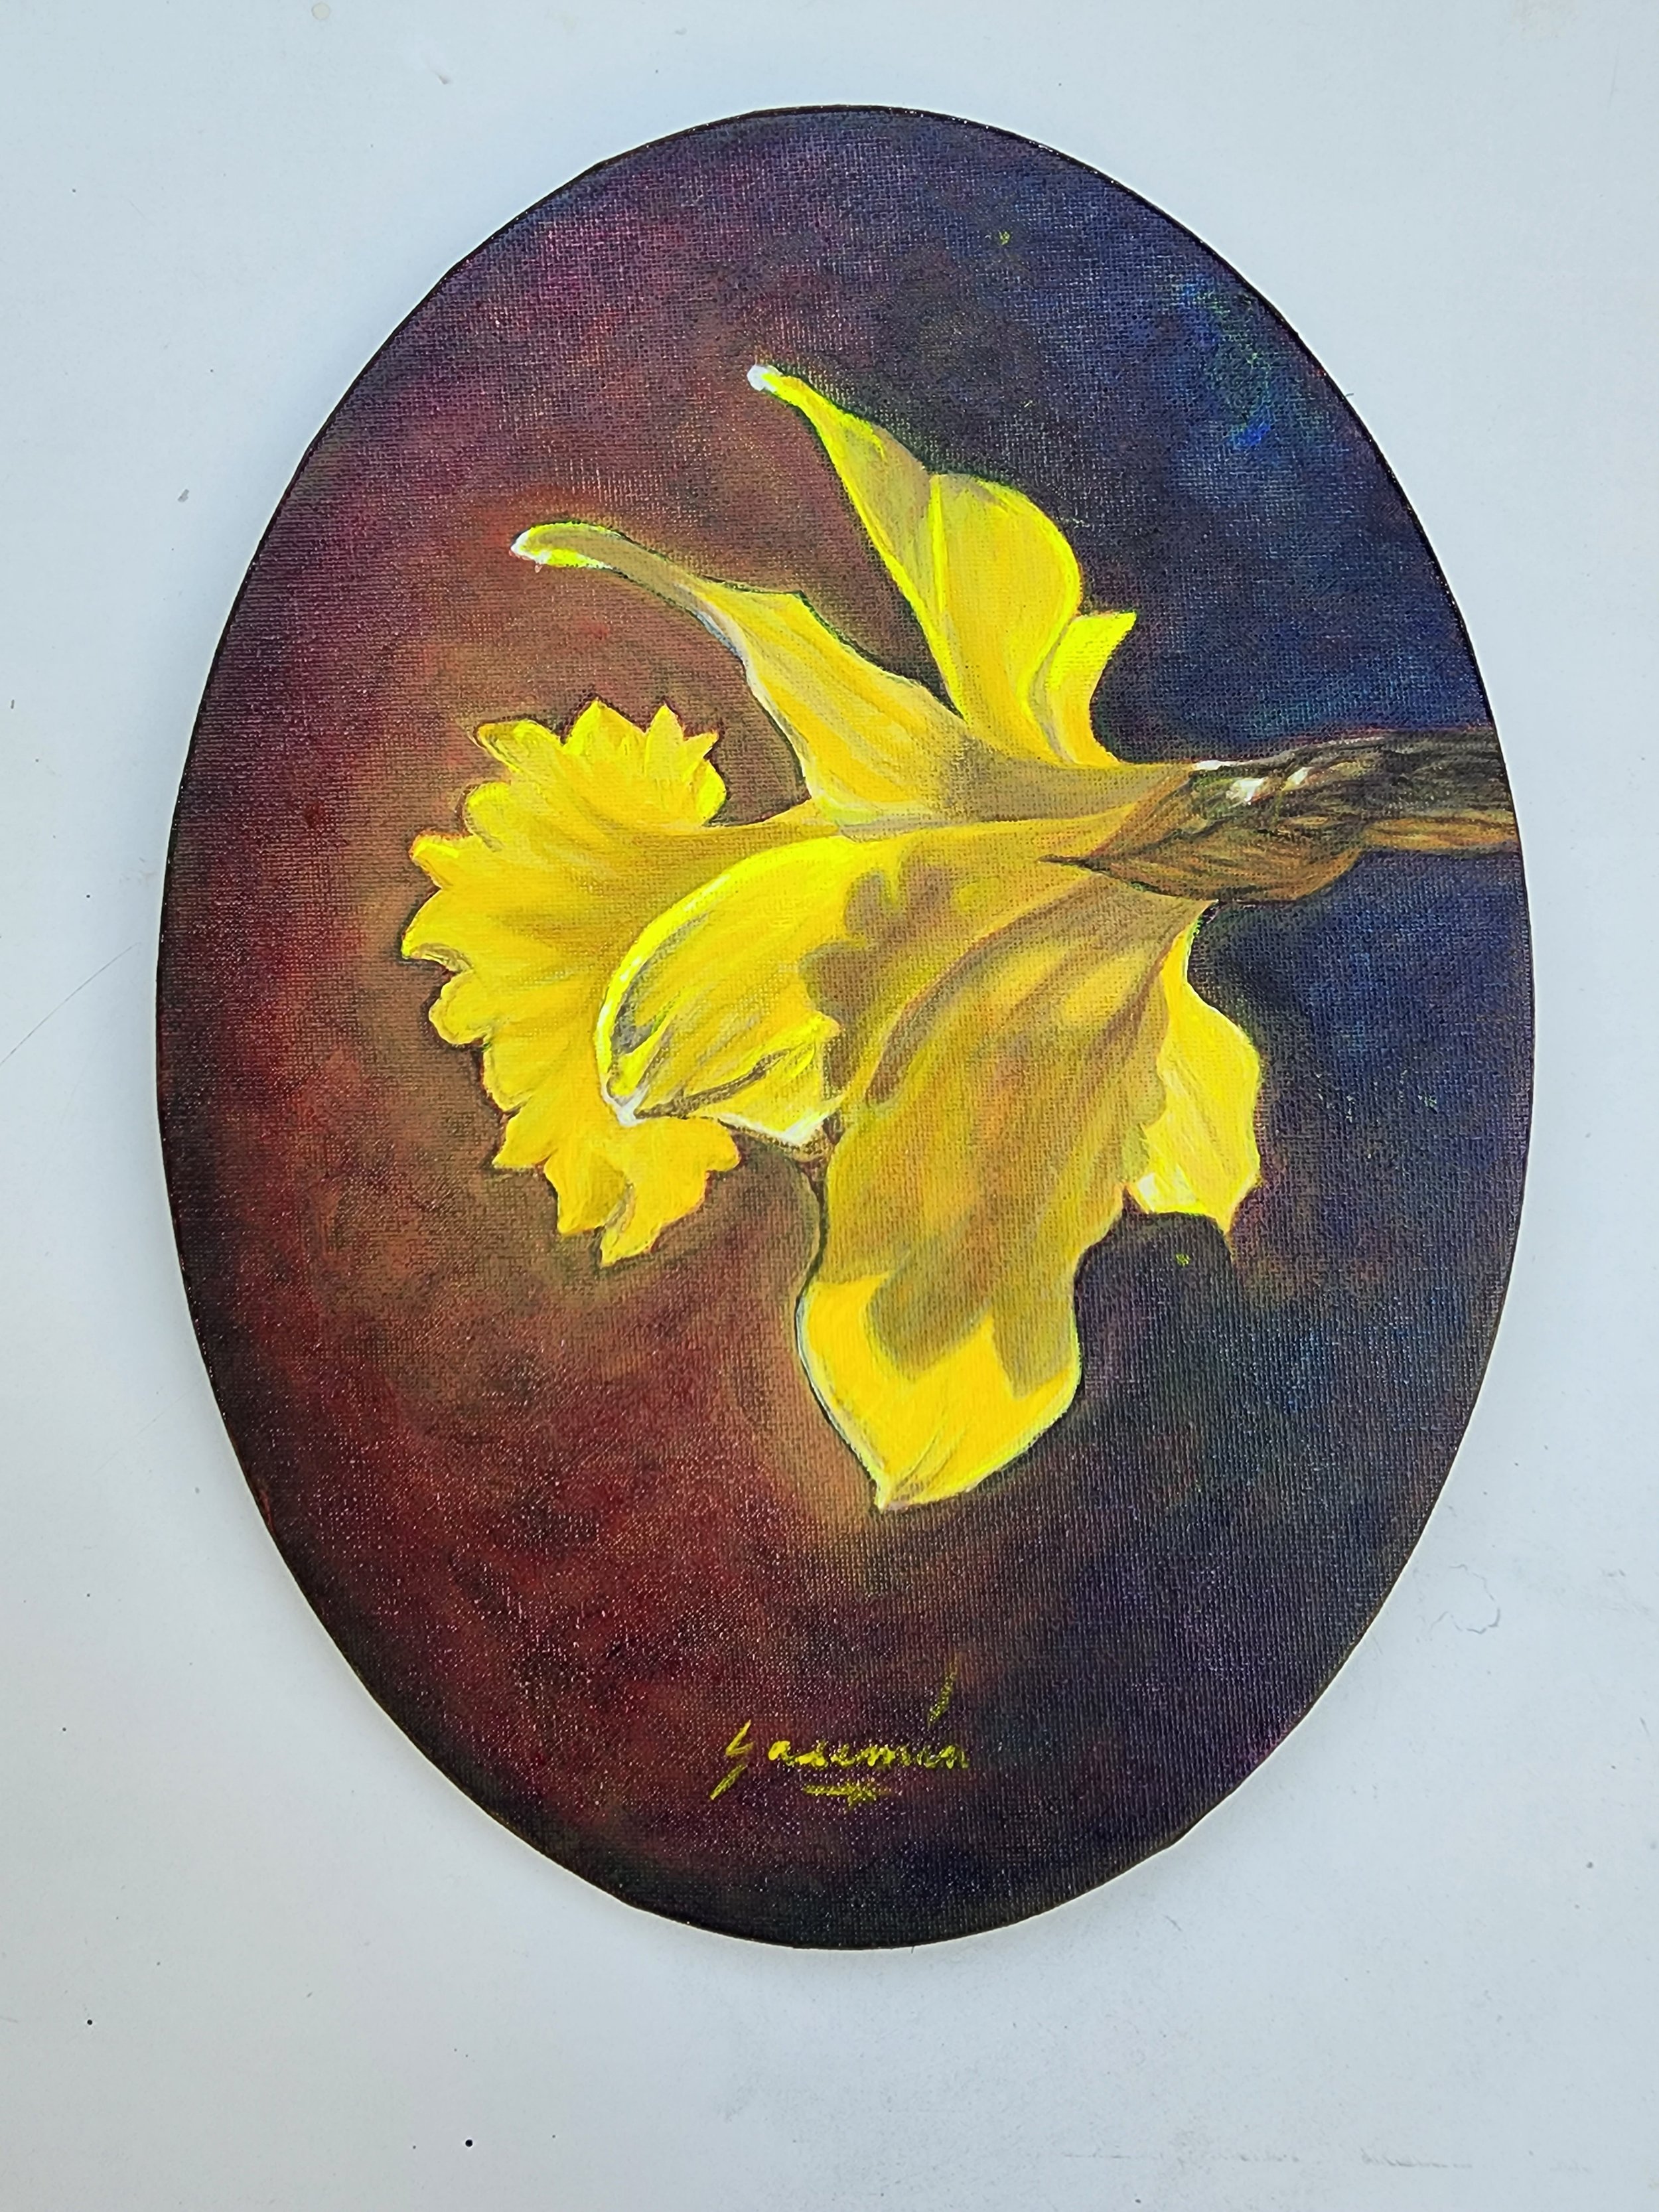 Deep Gold, 9 x 12", Acrylic on an Oval Canvas, $250